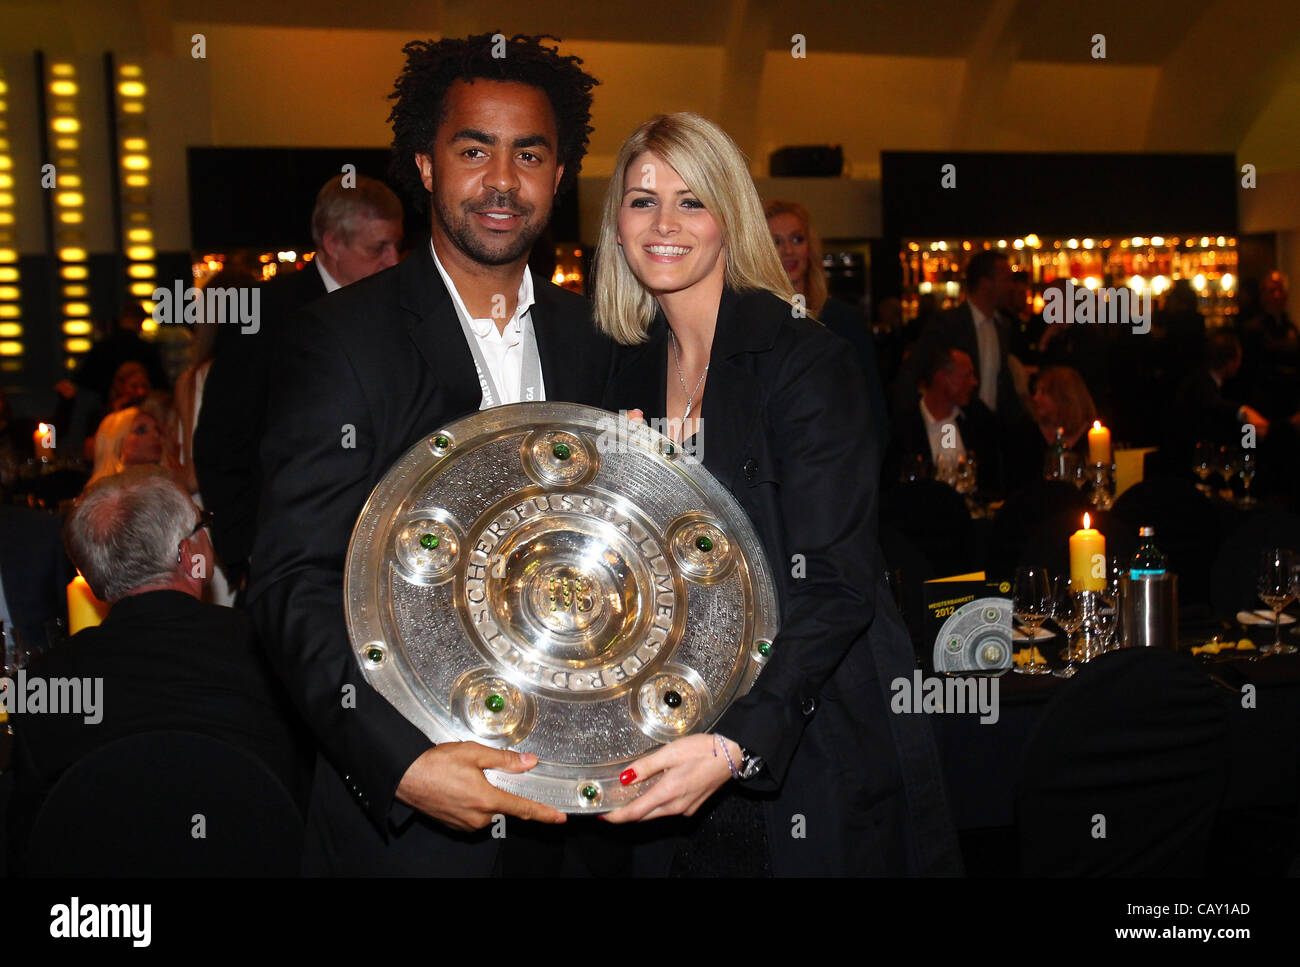 DORTMUND, Germania - 05 Maggio: Patrick OWOMOYELA e la sua fidanzata Josipa posano con il trofeo al ristorante vista il 5 maggio 2012 a Dortmund, Germania. Foto Stock